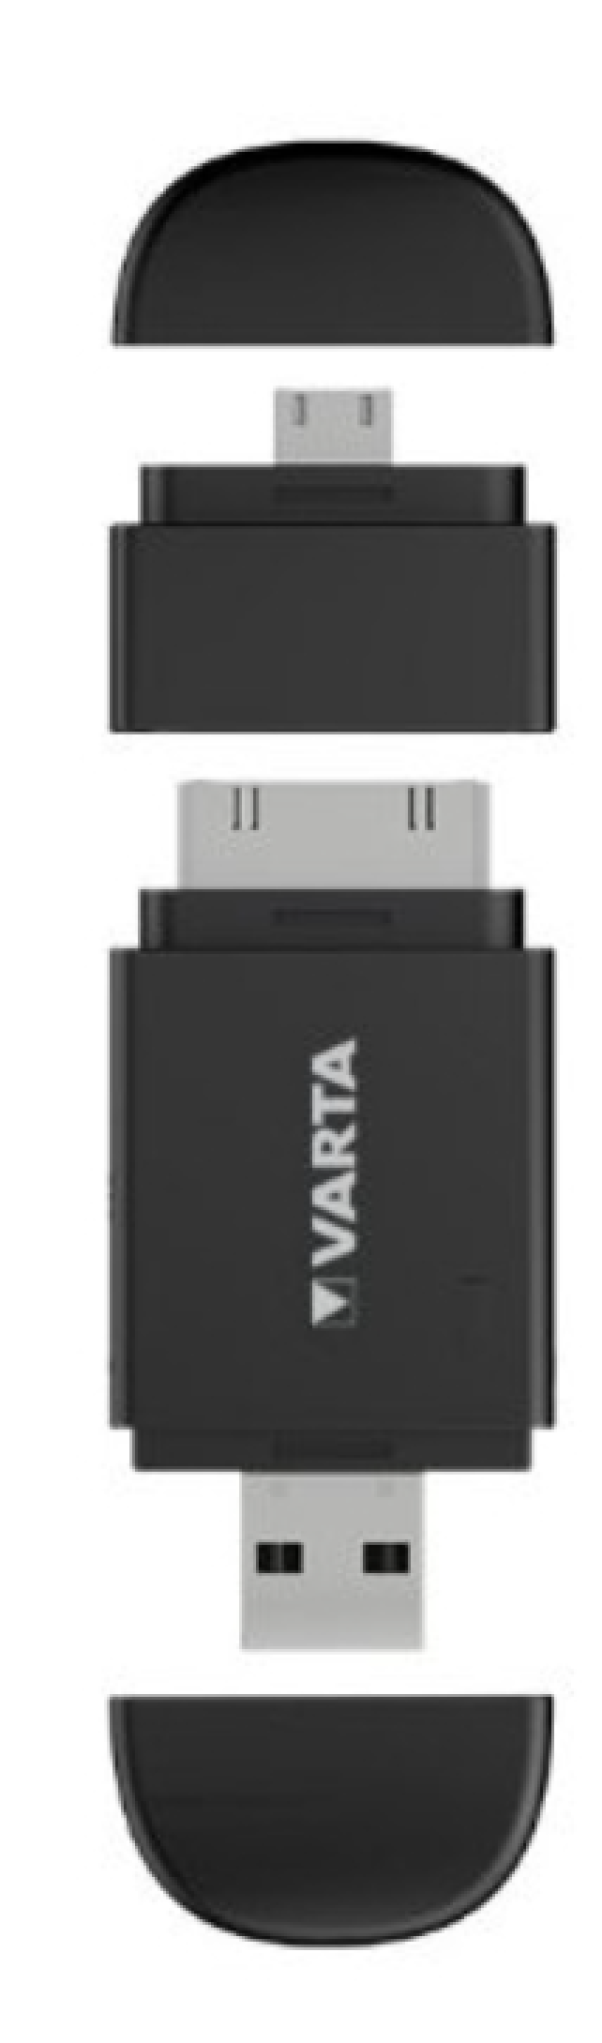 Mini caricabatterie Varta 400mAh 30x79x13,5mm nero - 57916101401 02